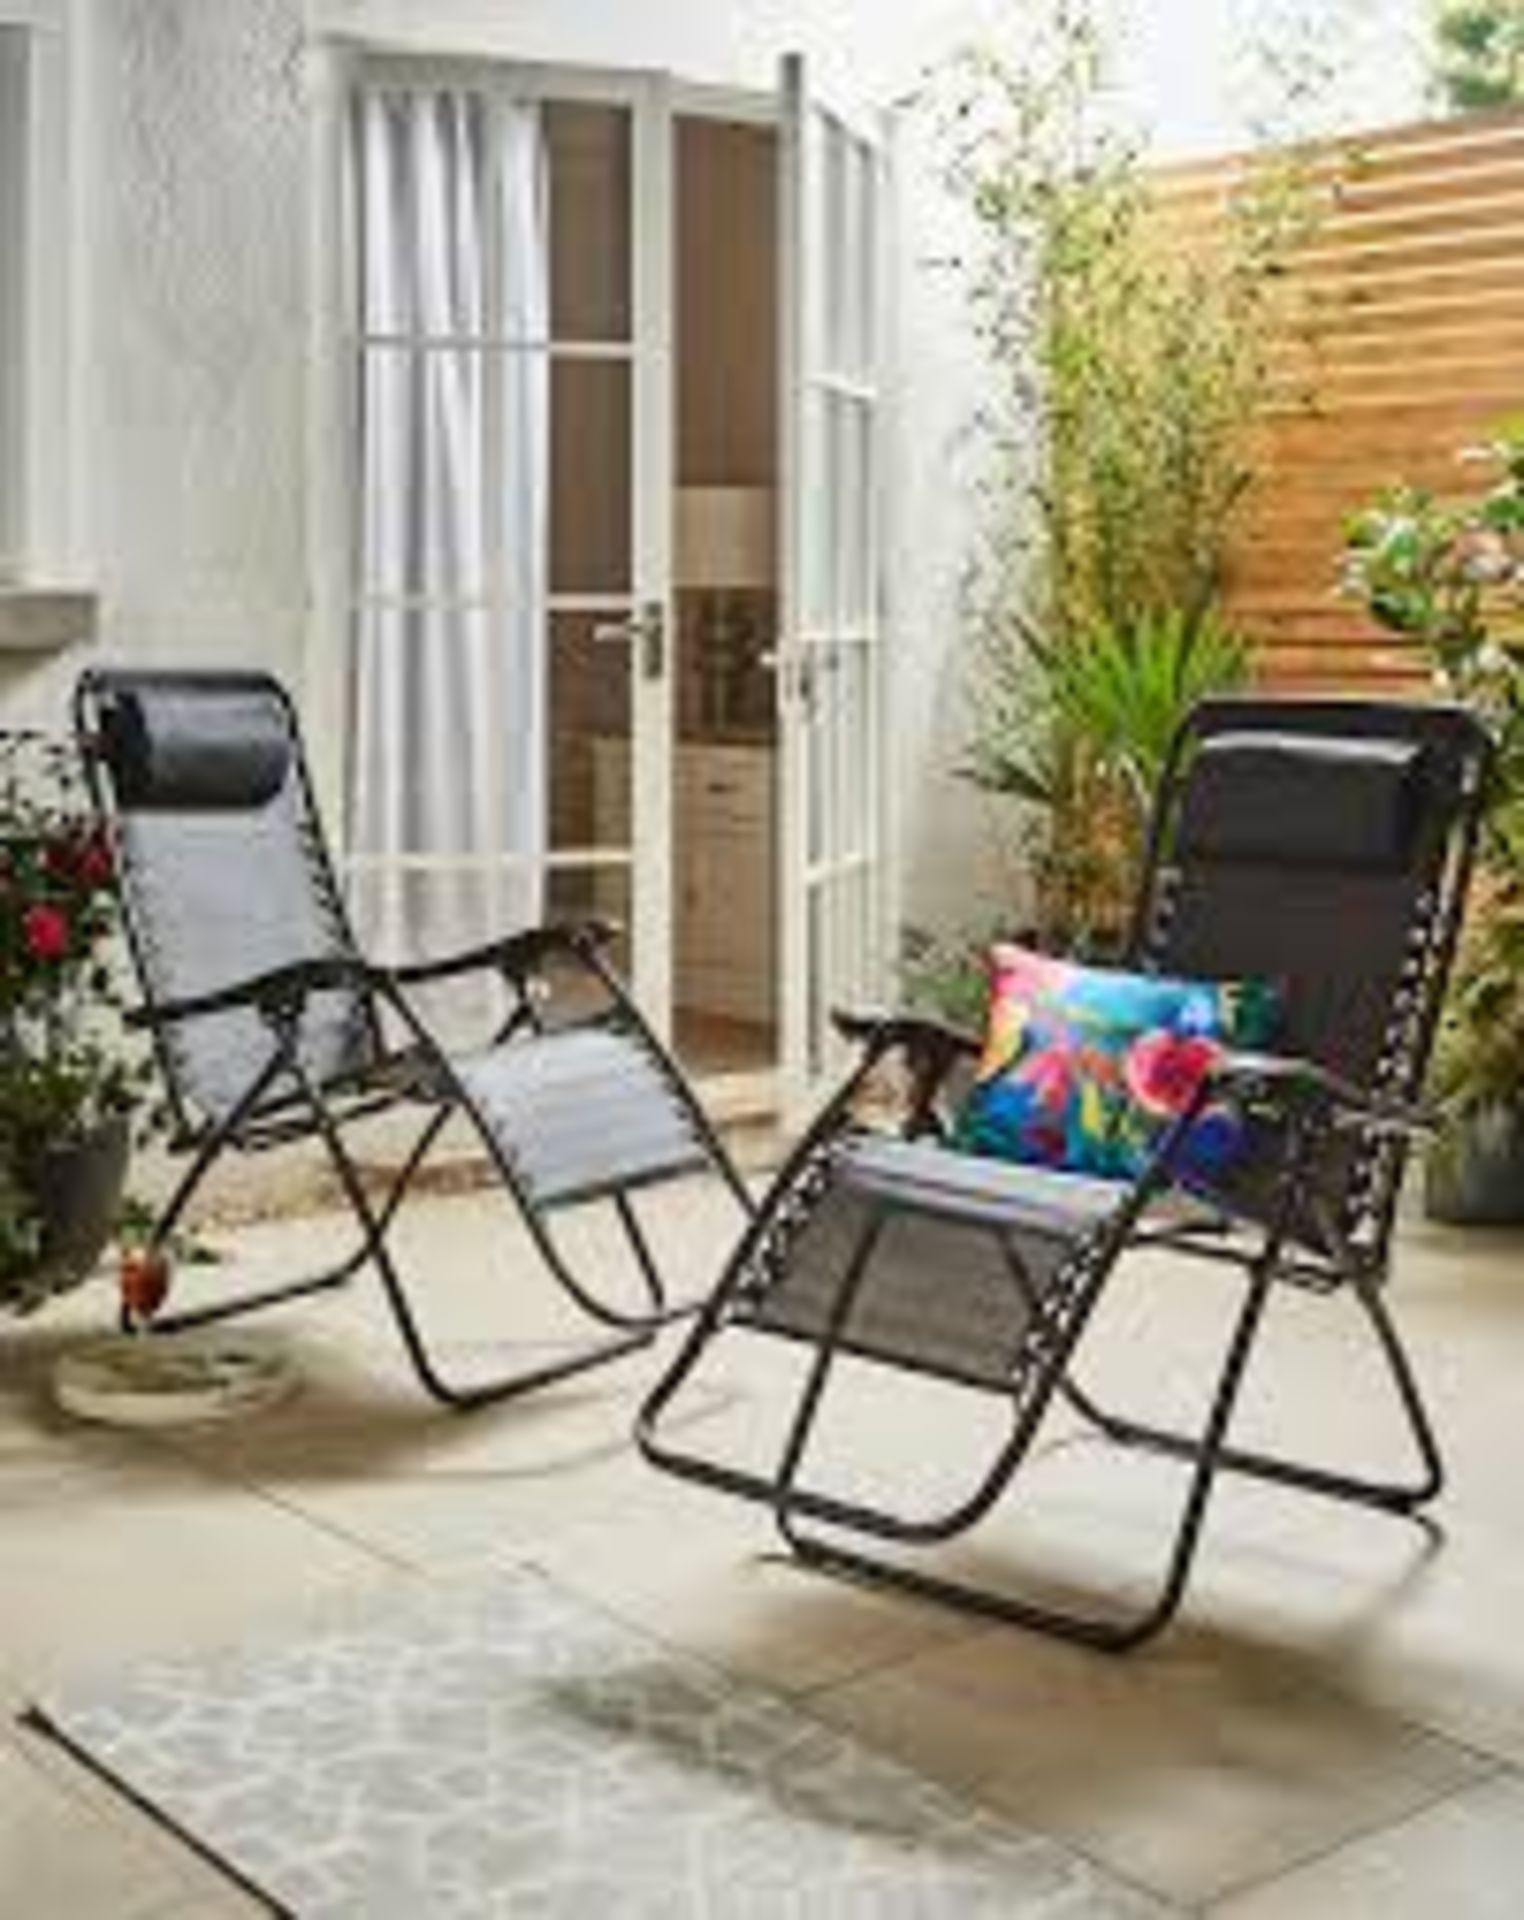 RRP £135.00 - Pair of Zero Gravity Chairs